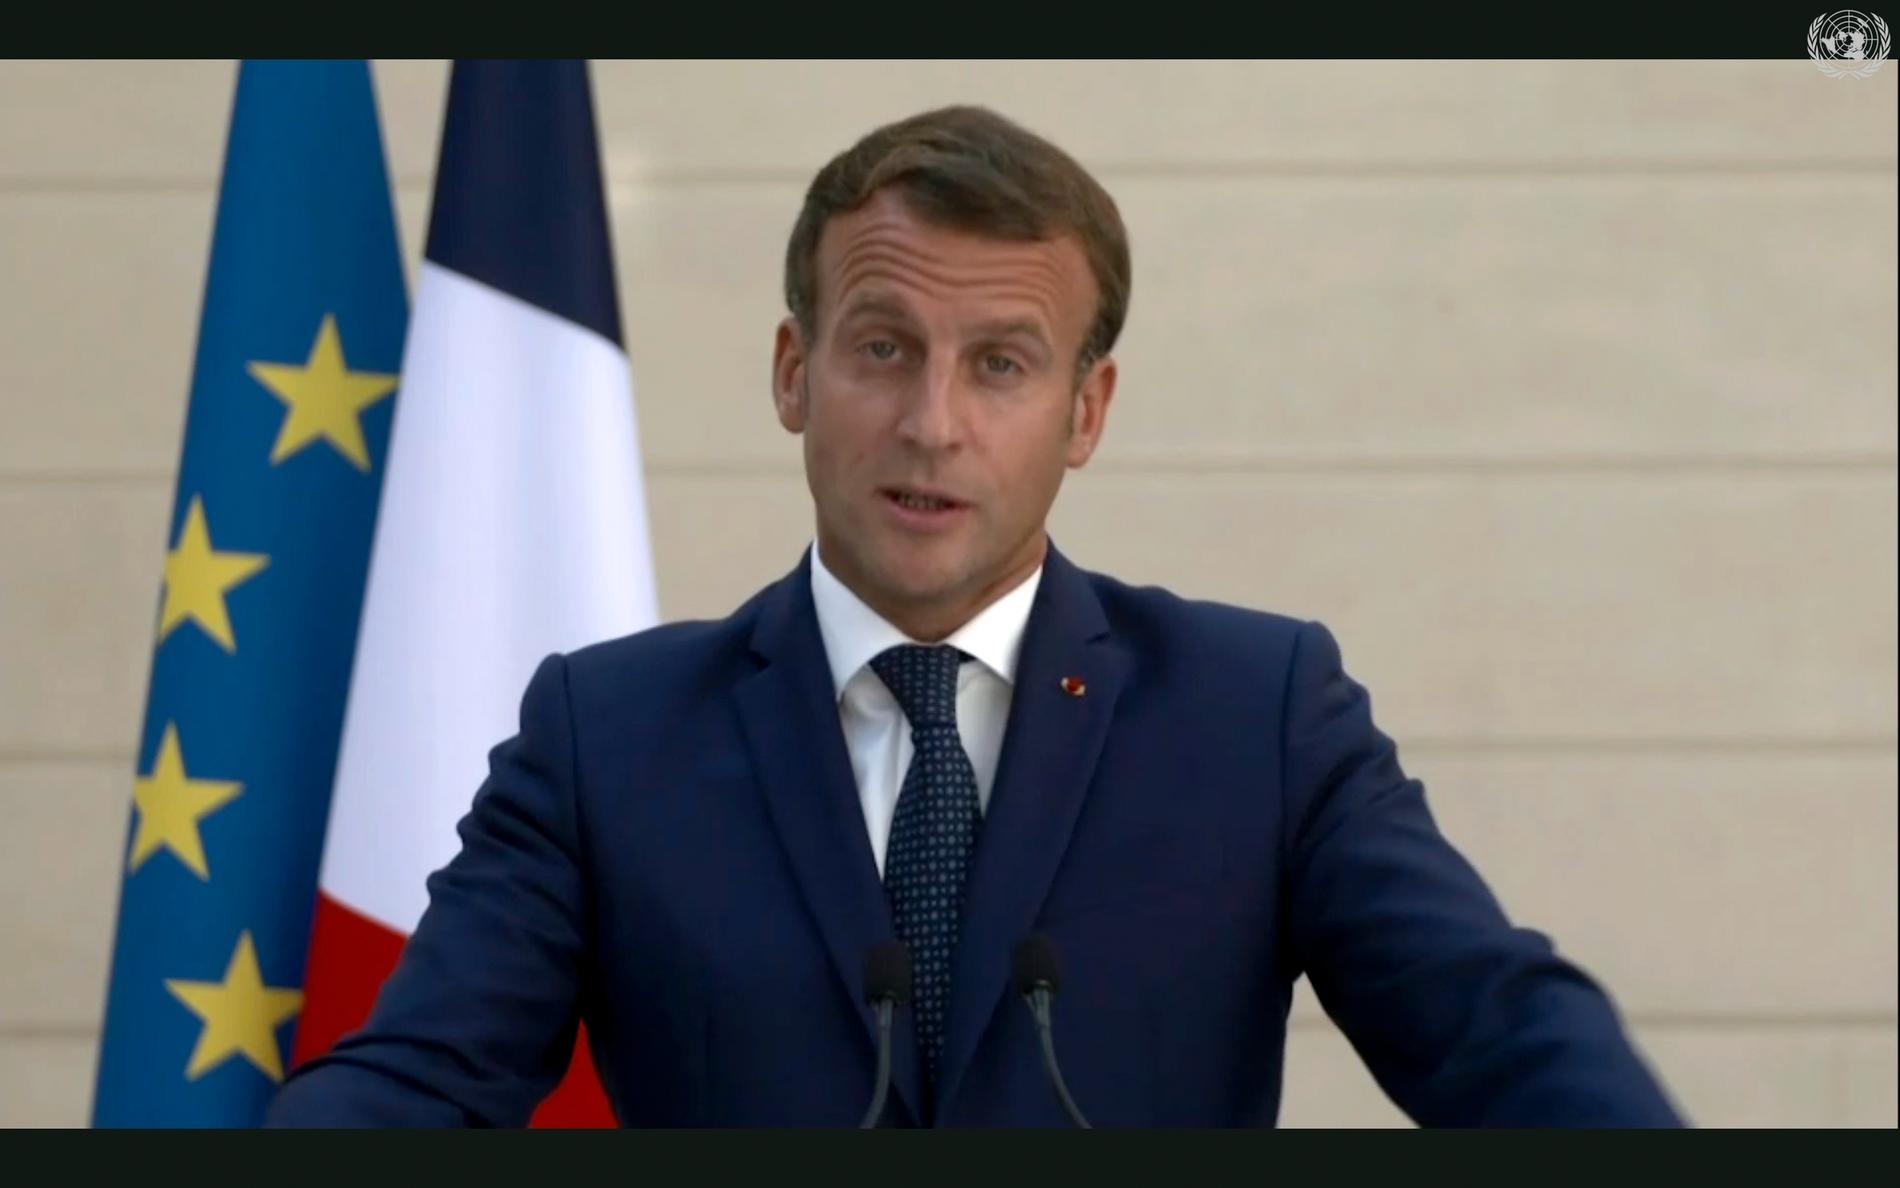 Frankrikes president Emmanuel Macron kräver i ett tal till FN:s generalförsamling Ryssland på svar om Aleksej Navalnyjs förgiftning.